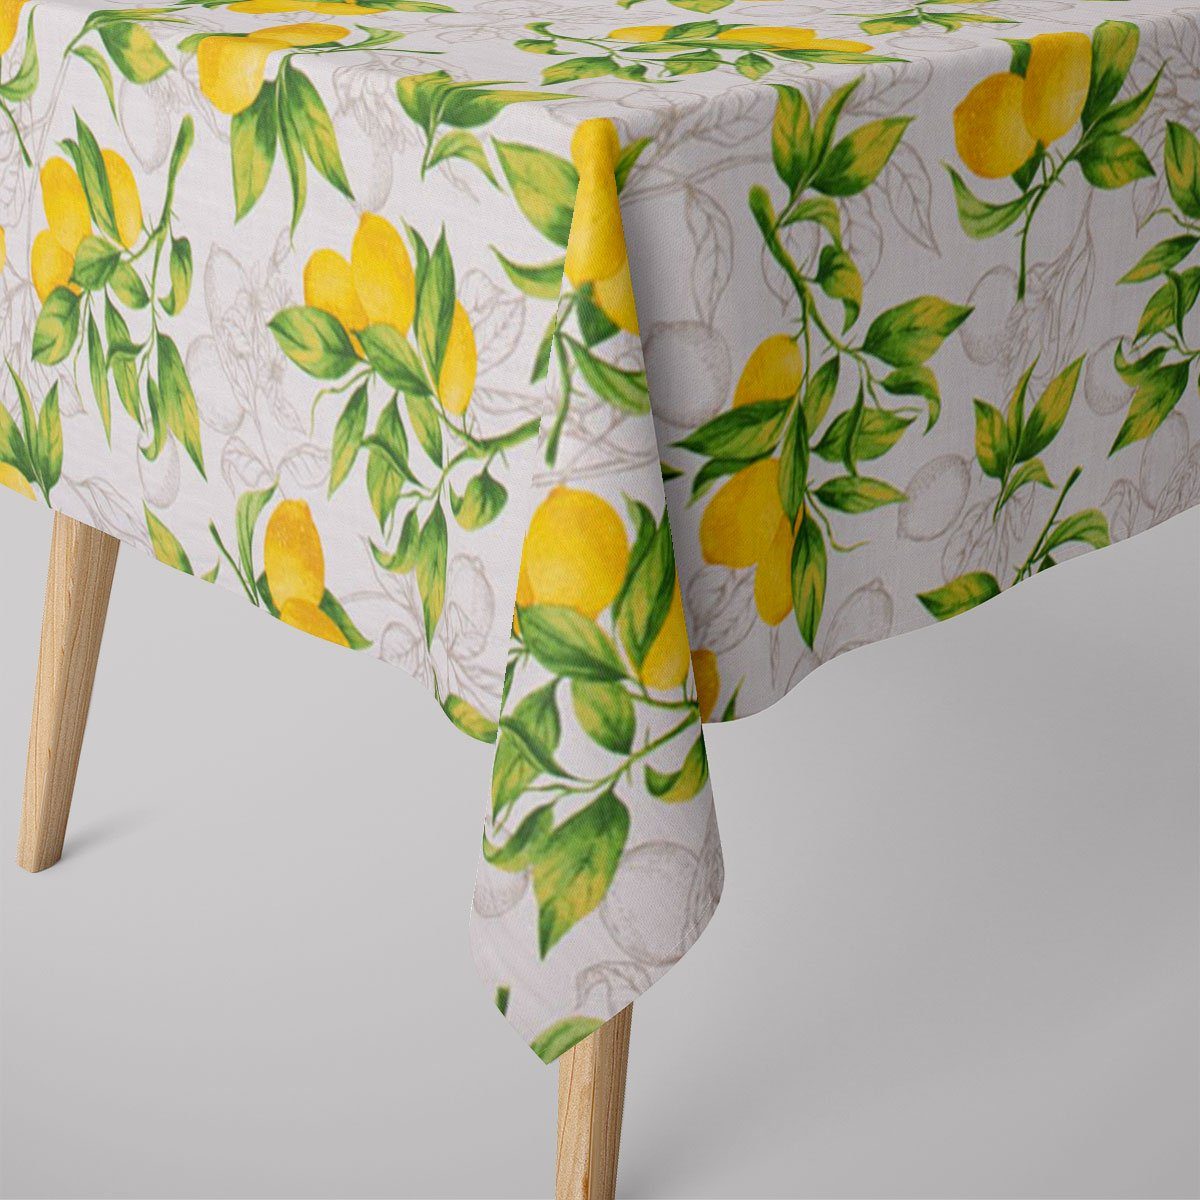 SCHÖNER LEBEN. Tischdecke SCHÖNER LEBEN. Tischdecke aus Baumwolle Citron Zitronen weiß grün gel, handmade | Tischdecken